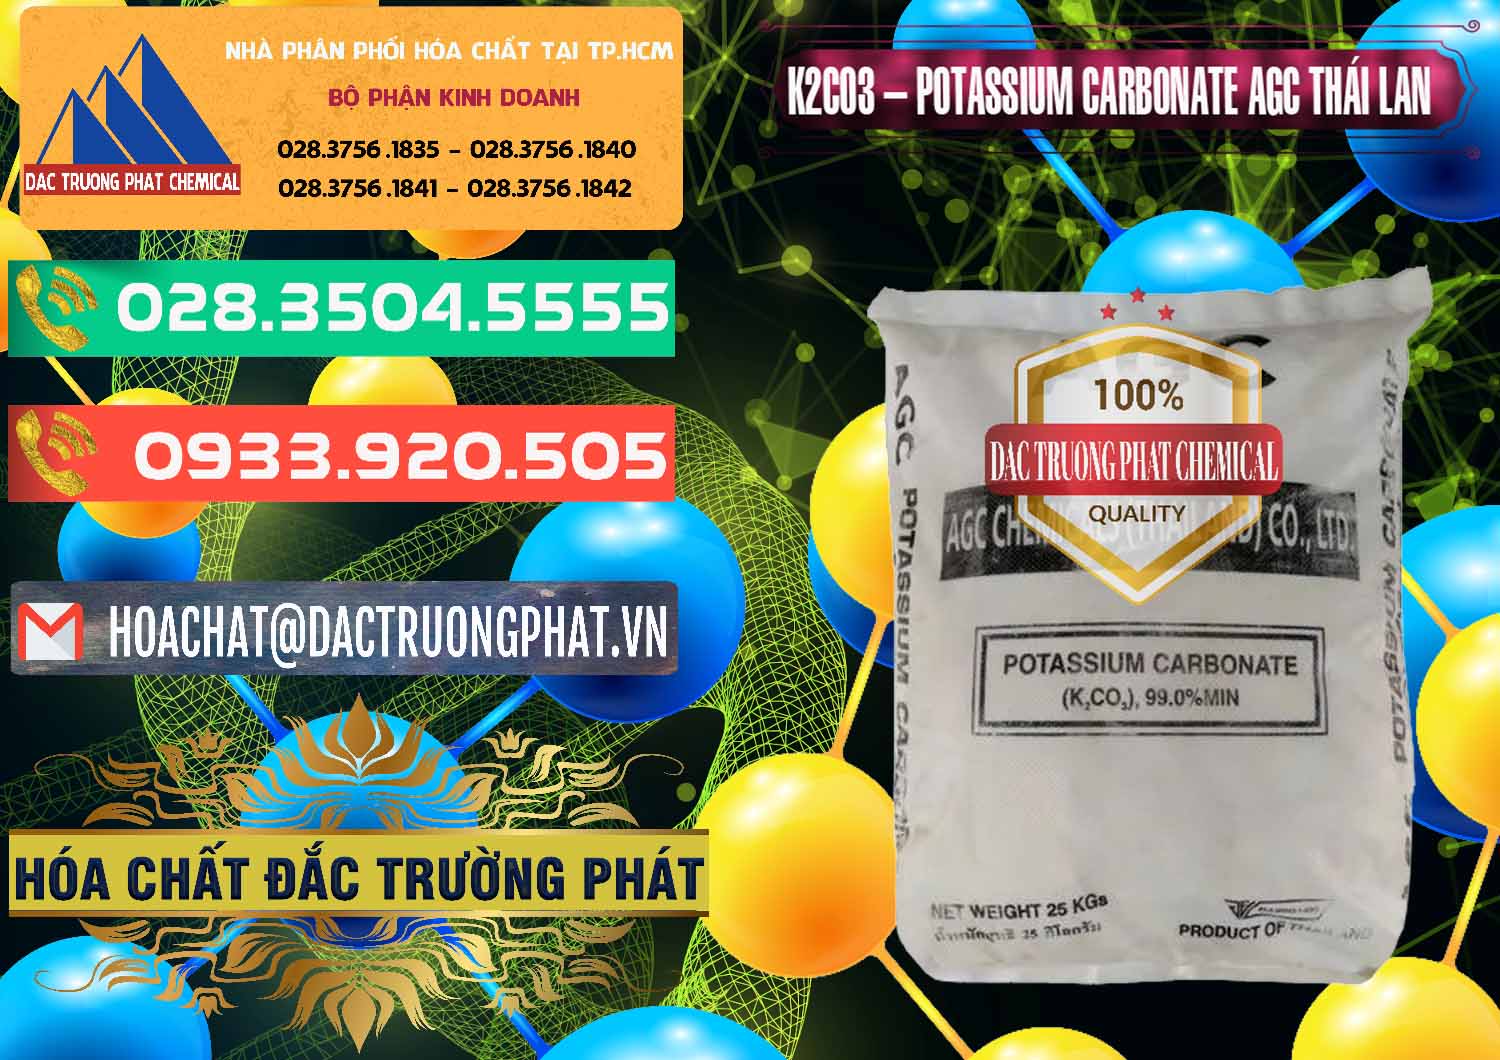 Cty chuyên kinh doanh _ bán K2Co3 – Potassium Carbonate AGC Thái Lan Thailand - 0471 - Cty chuyên bán ( phân phối ) hóa chất tại TP.HCM - congtyhoachat.com.vn